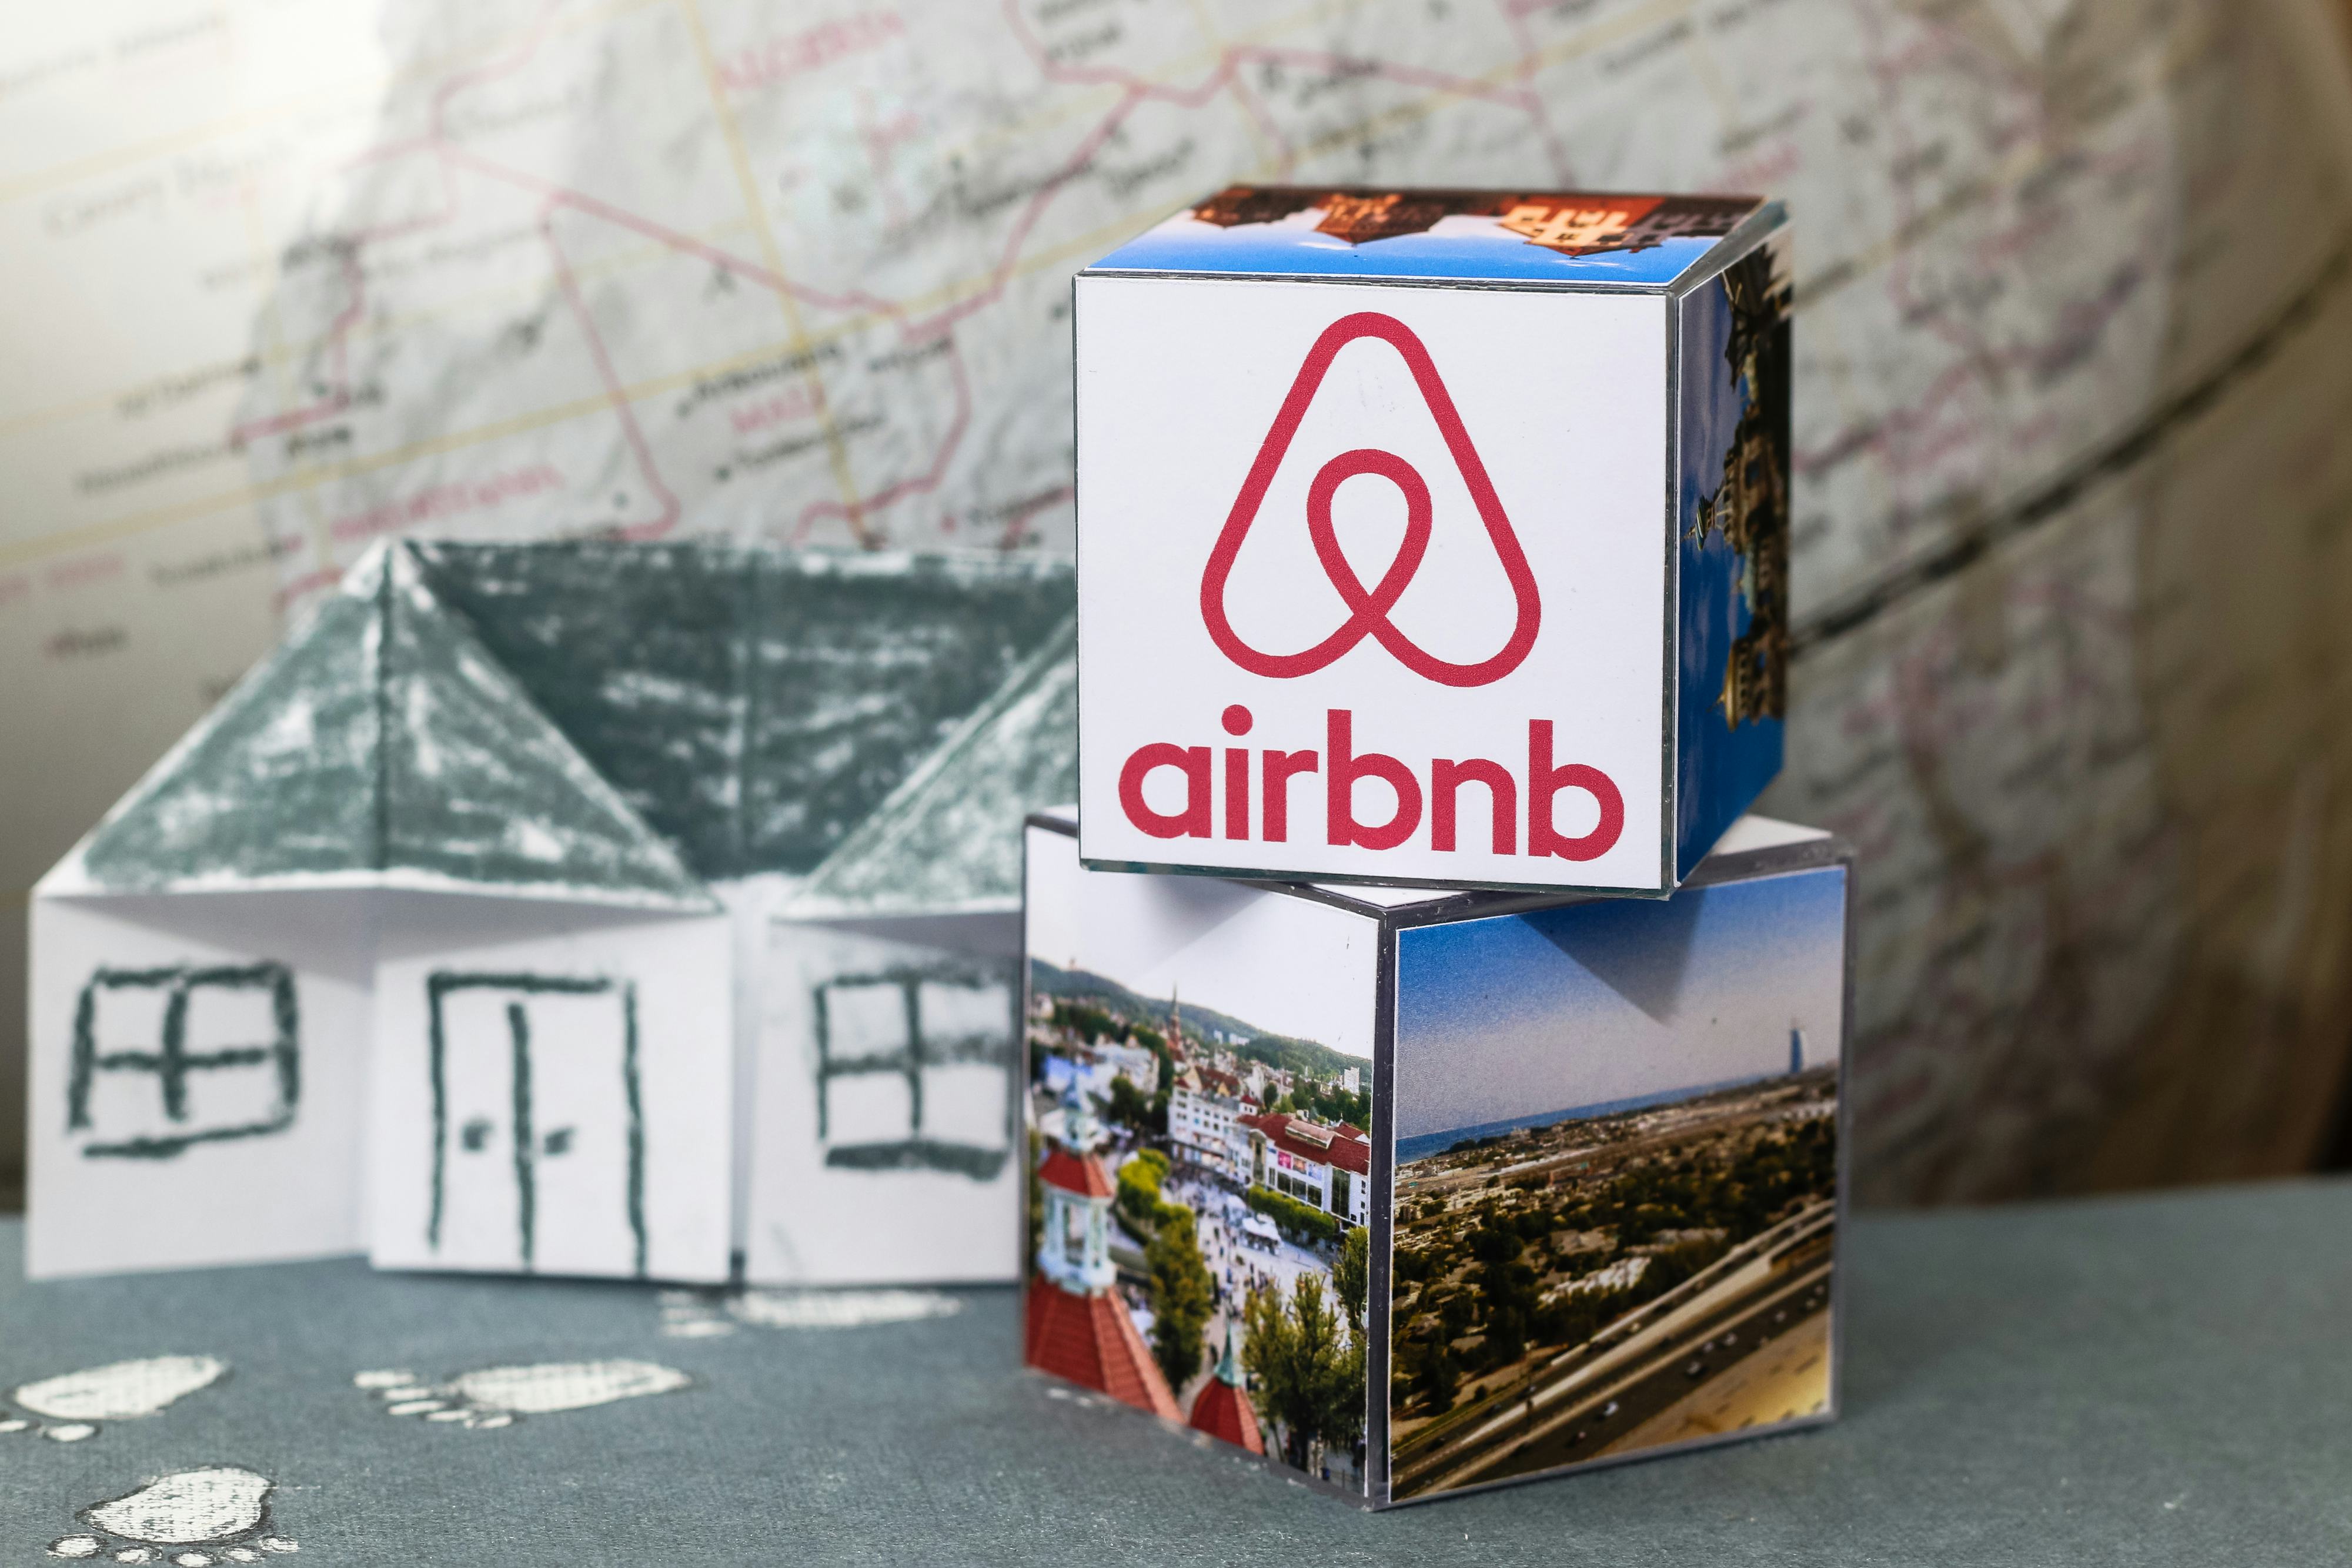 Marktaandeel Airbnb blijft stijgen in Nederland: de cijfers op een rij